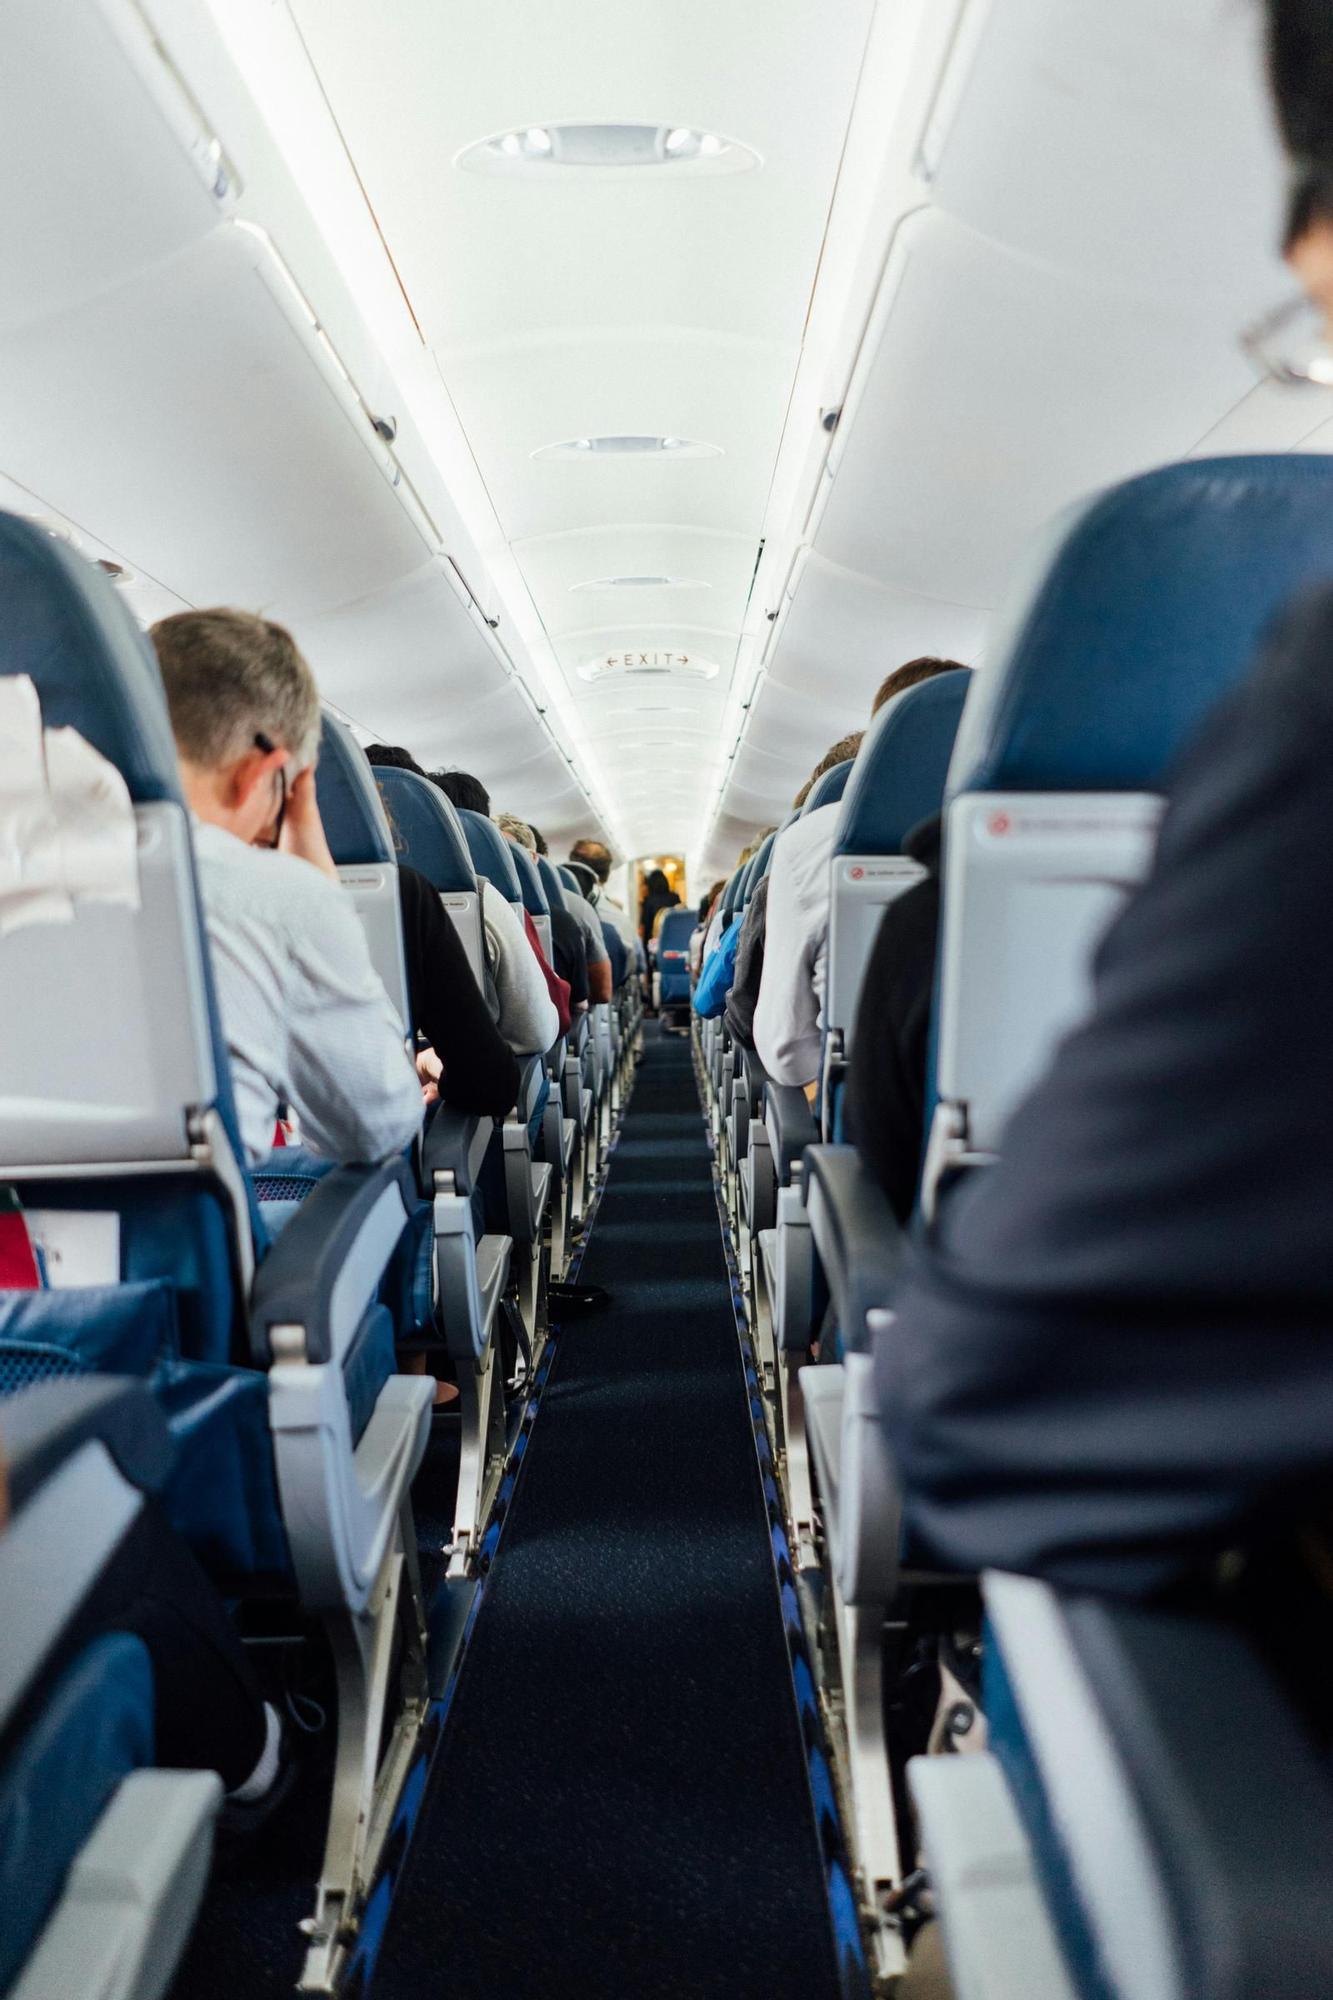 Los pasajeros con asiento pasillo suelen ser los últimos en subir al avión.